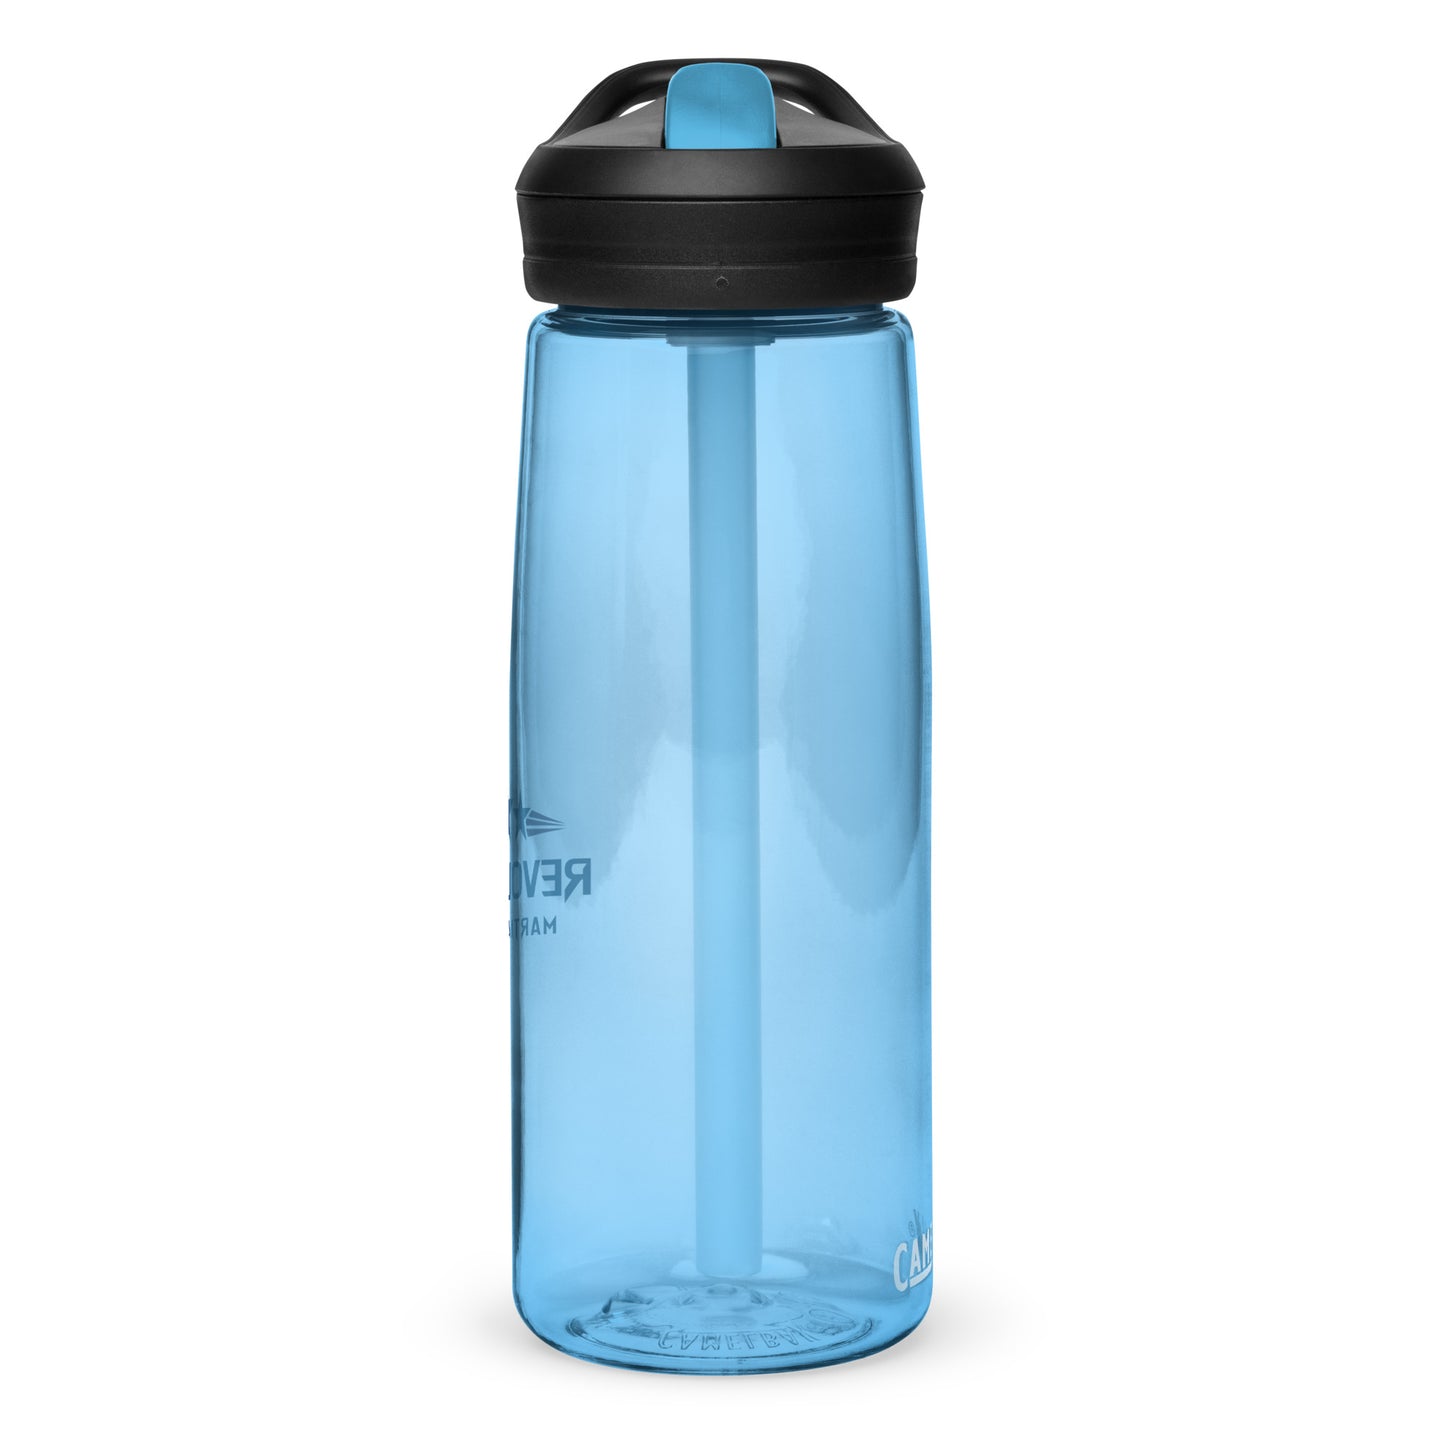 Sports water bottle